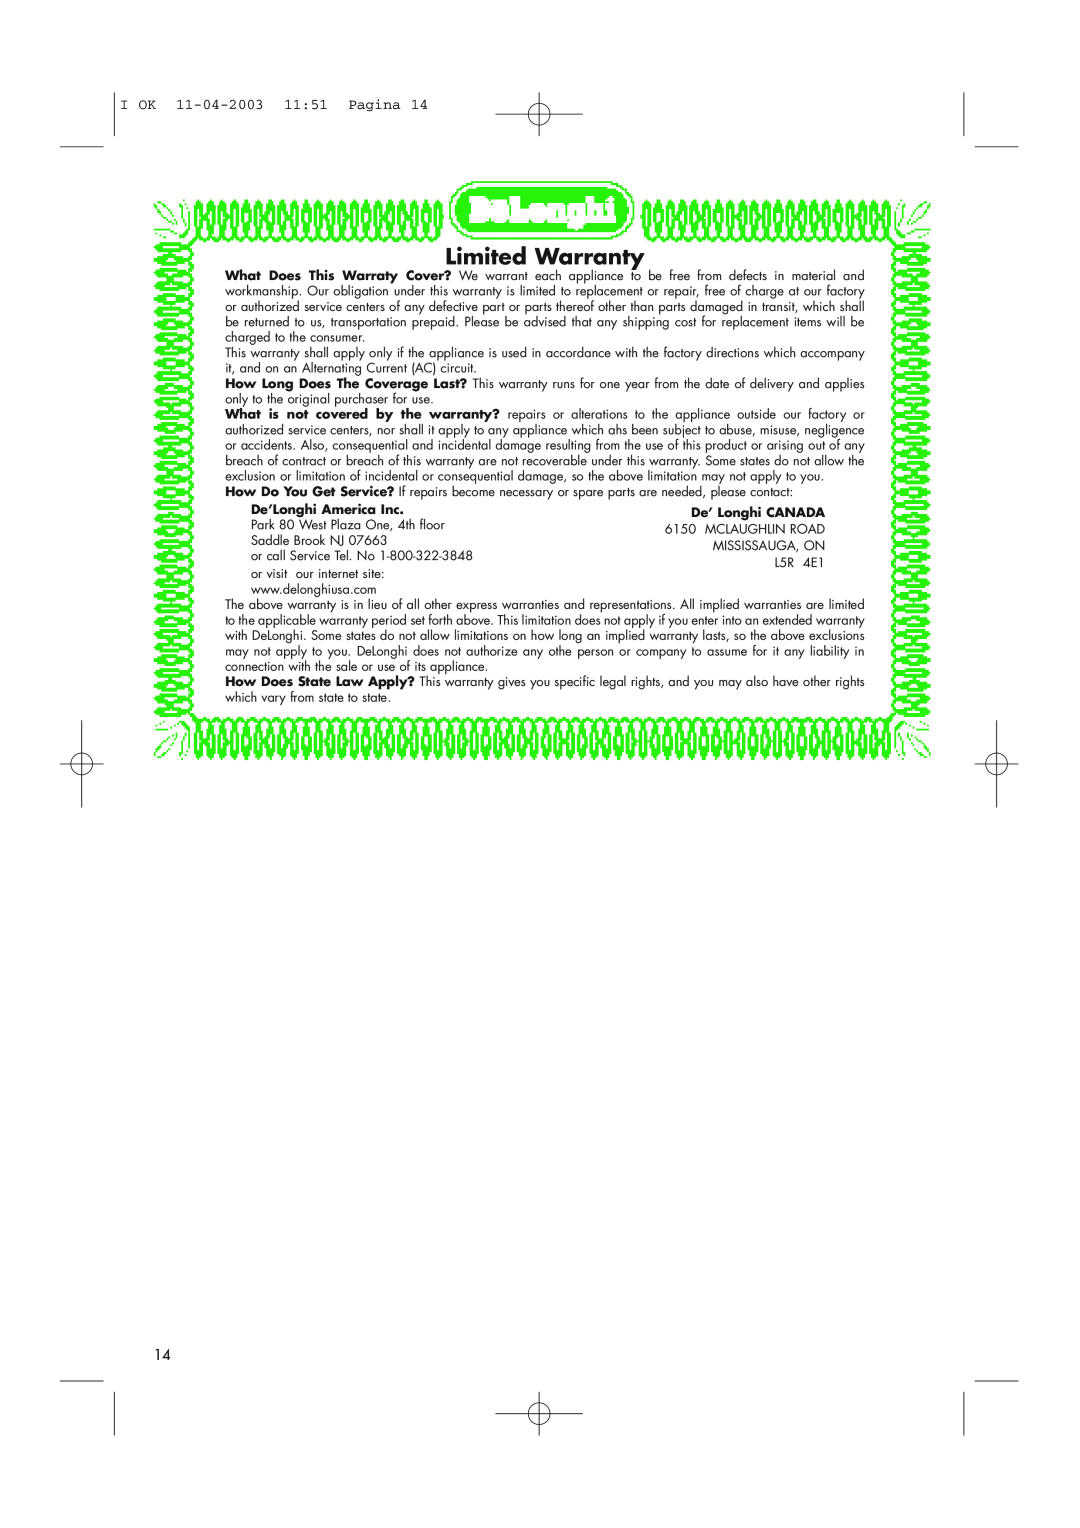 DeLonghi BCO264B manual Limited Warranty, I OK 11-04-2003 1151 Pagina, De’Longhi America Inc 